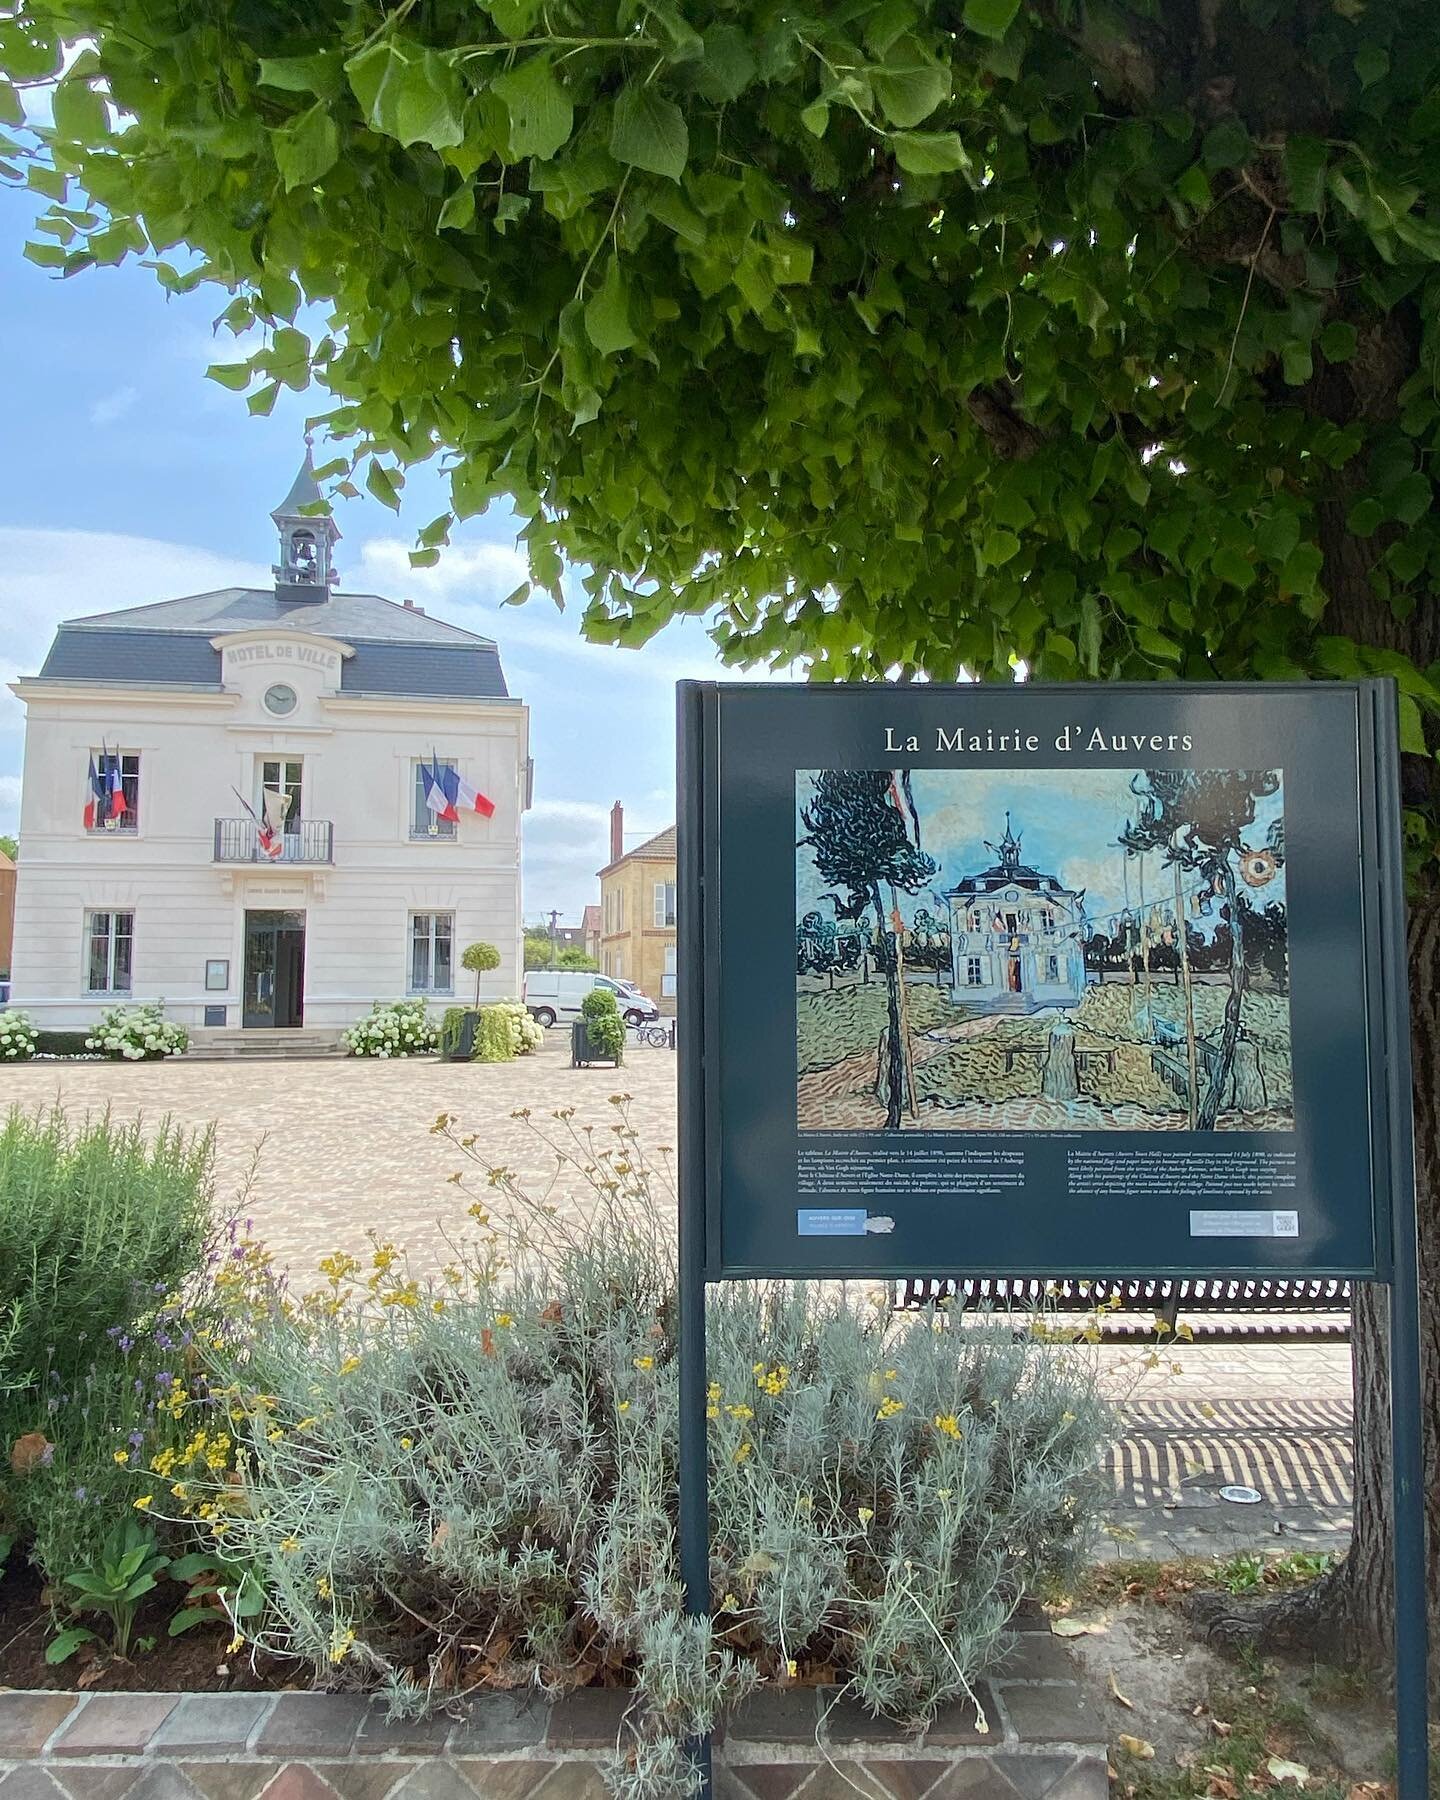 Chez Vincent Van Gogh &agrave; Auvers-sur-Oise le 20 juin🎨✨
Visite promenade avec notre guide Philippe 💎

#visiteculturelle #musee #vincentvangogh #auverssuroise #visiteguidee